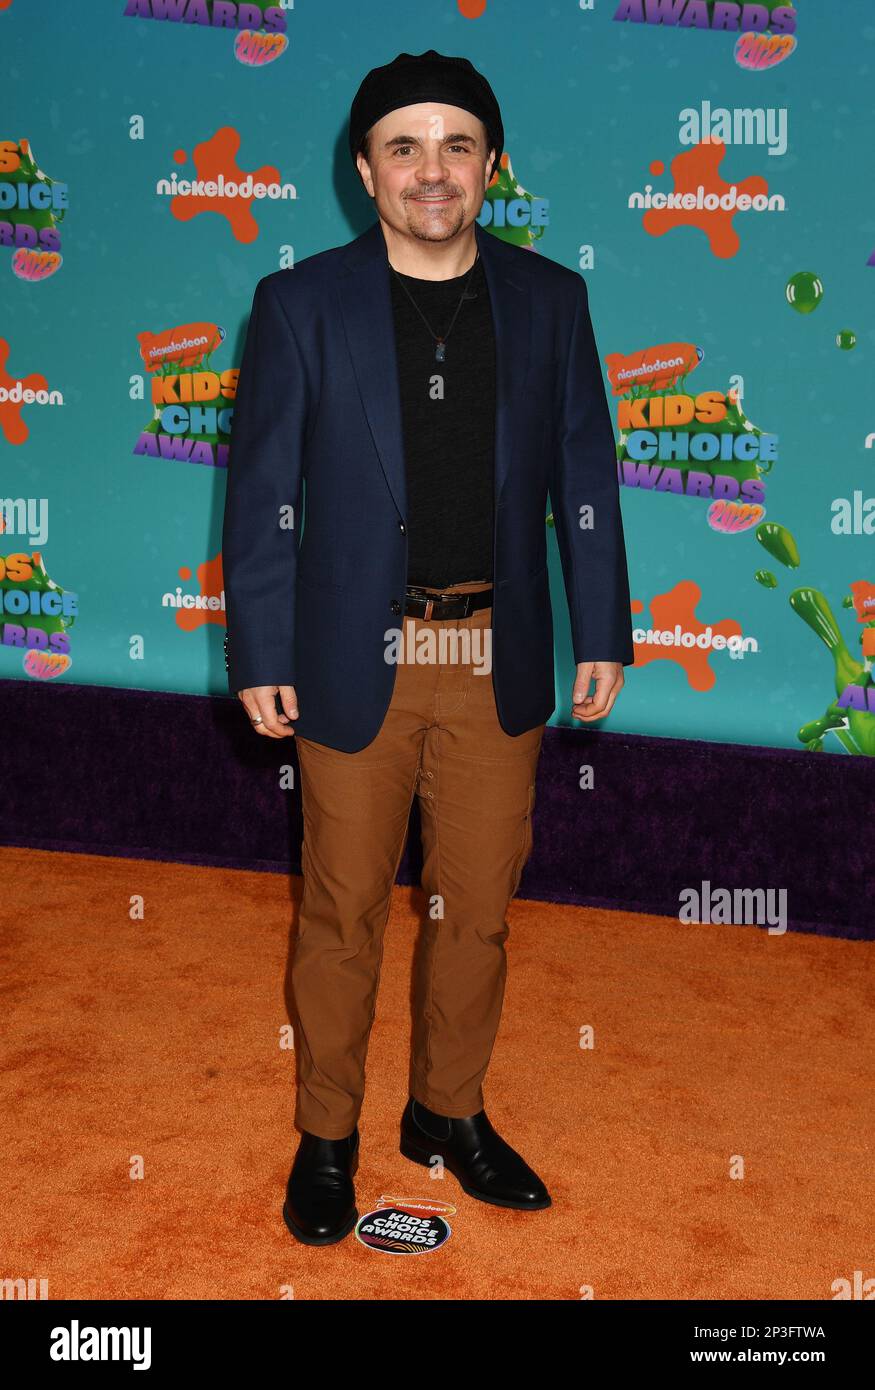 LOS ANGELES, CALIFORNIA - 04 DE MARZO: Michael D. Cohen asiste a los premios Kids' Choice Awards 2023 de Nickelodeon en el Microsoft Theater el 04 de marzo de 2023 en Los Ange Foto de stock